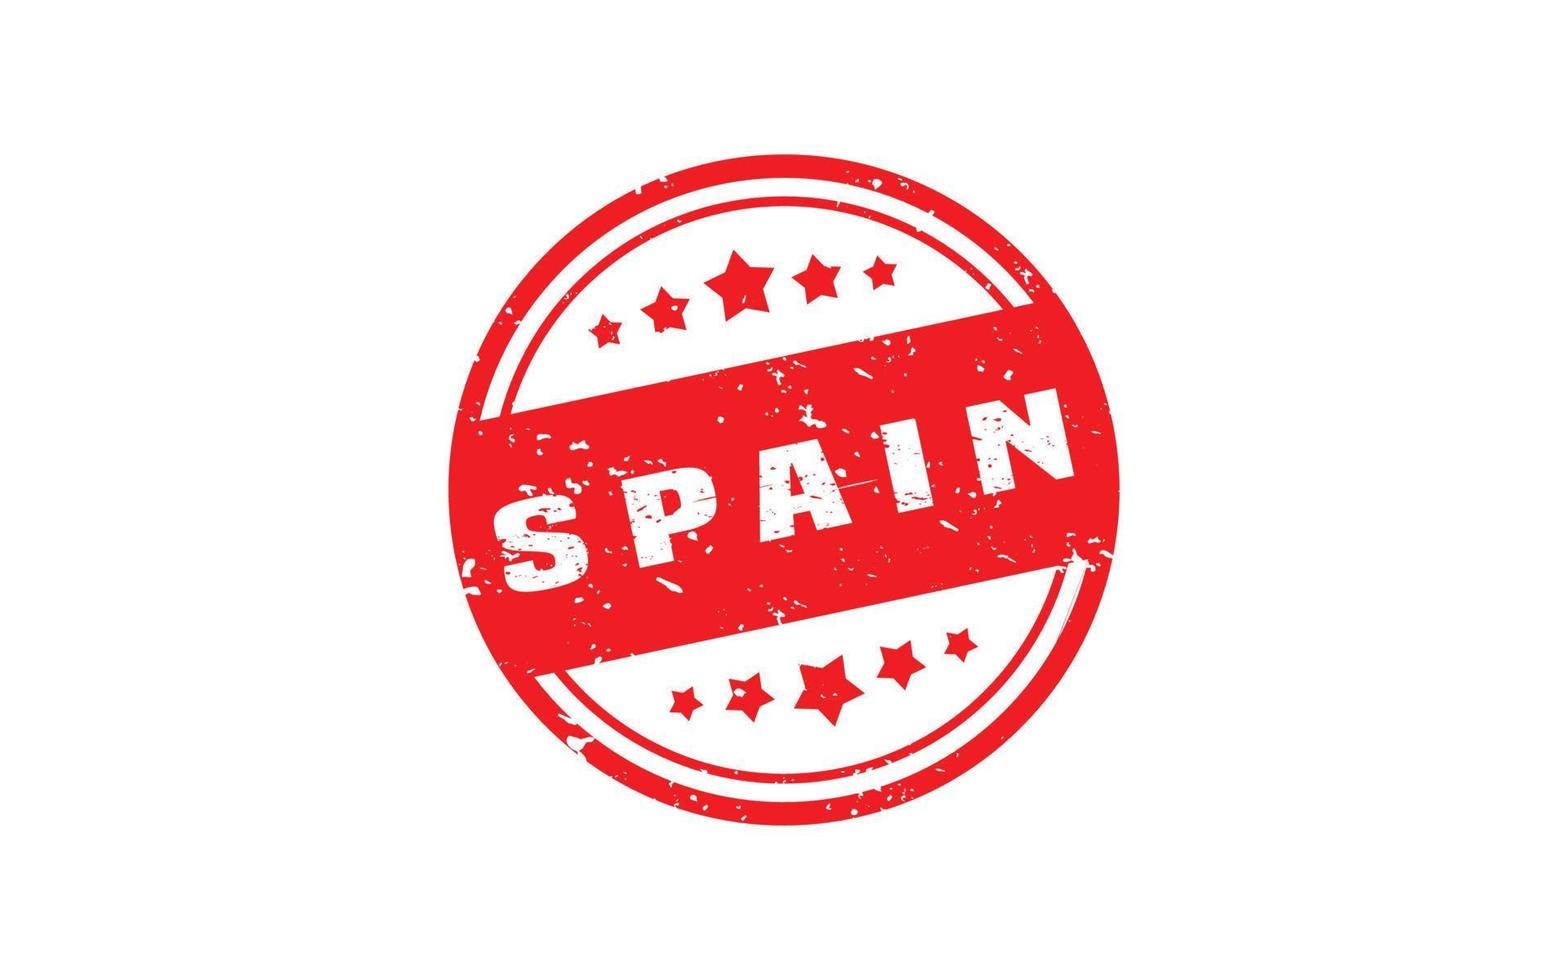 Espagne timbre caoutchouc avec grunge style sur blanc Contexte vecteur